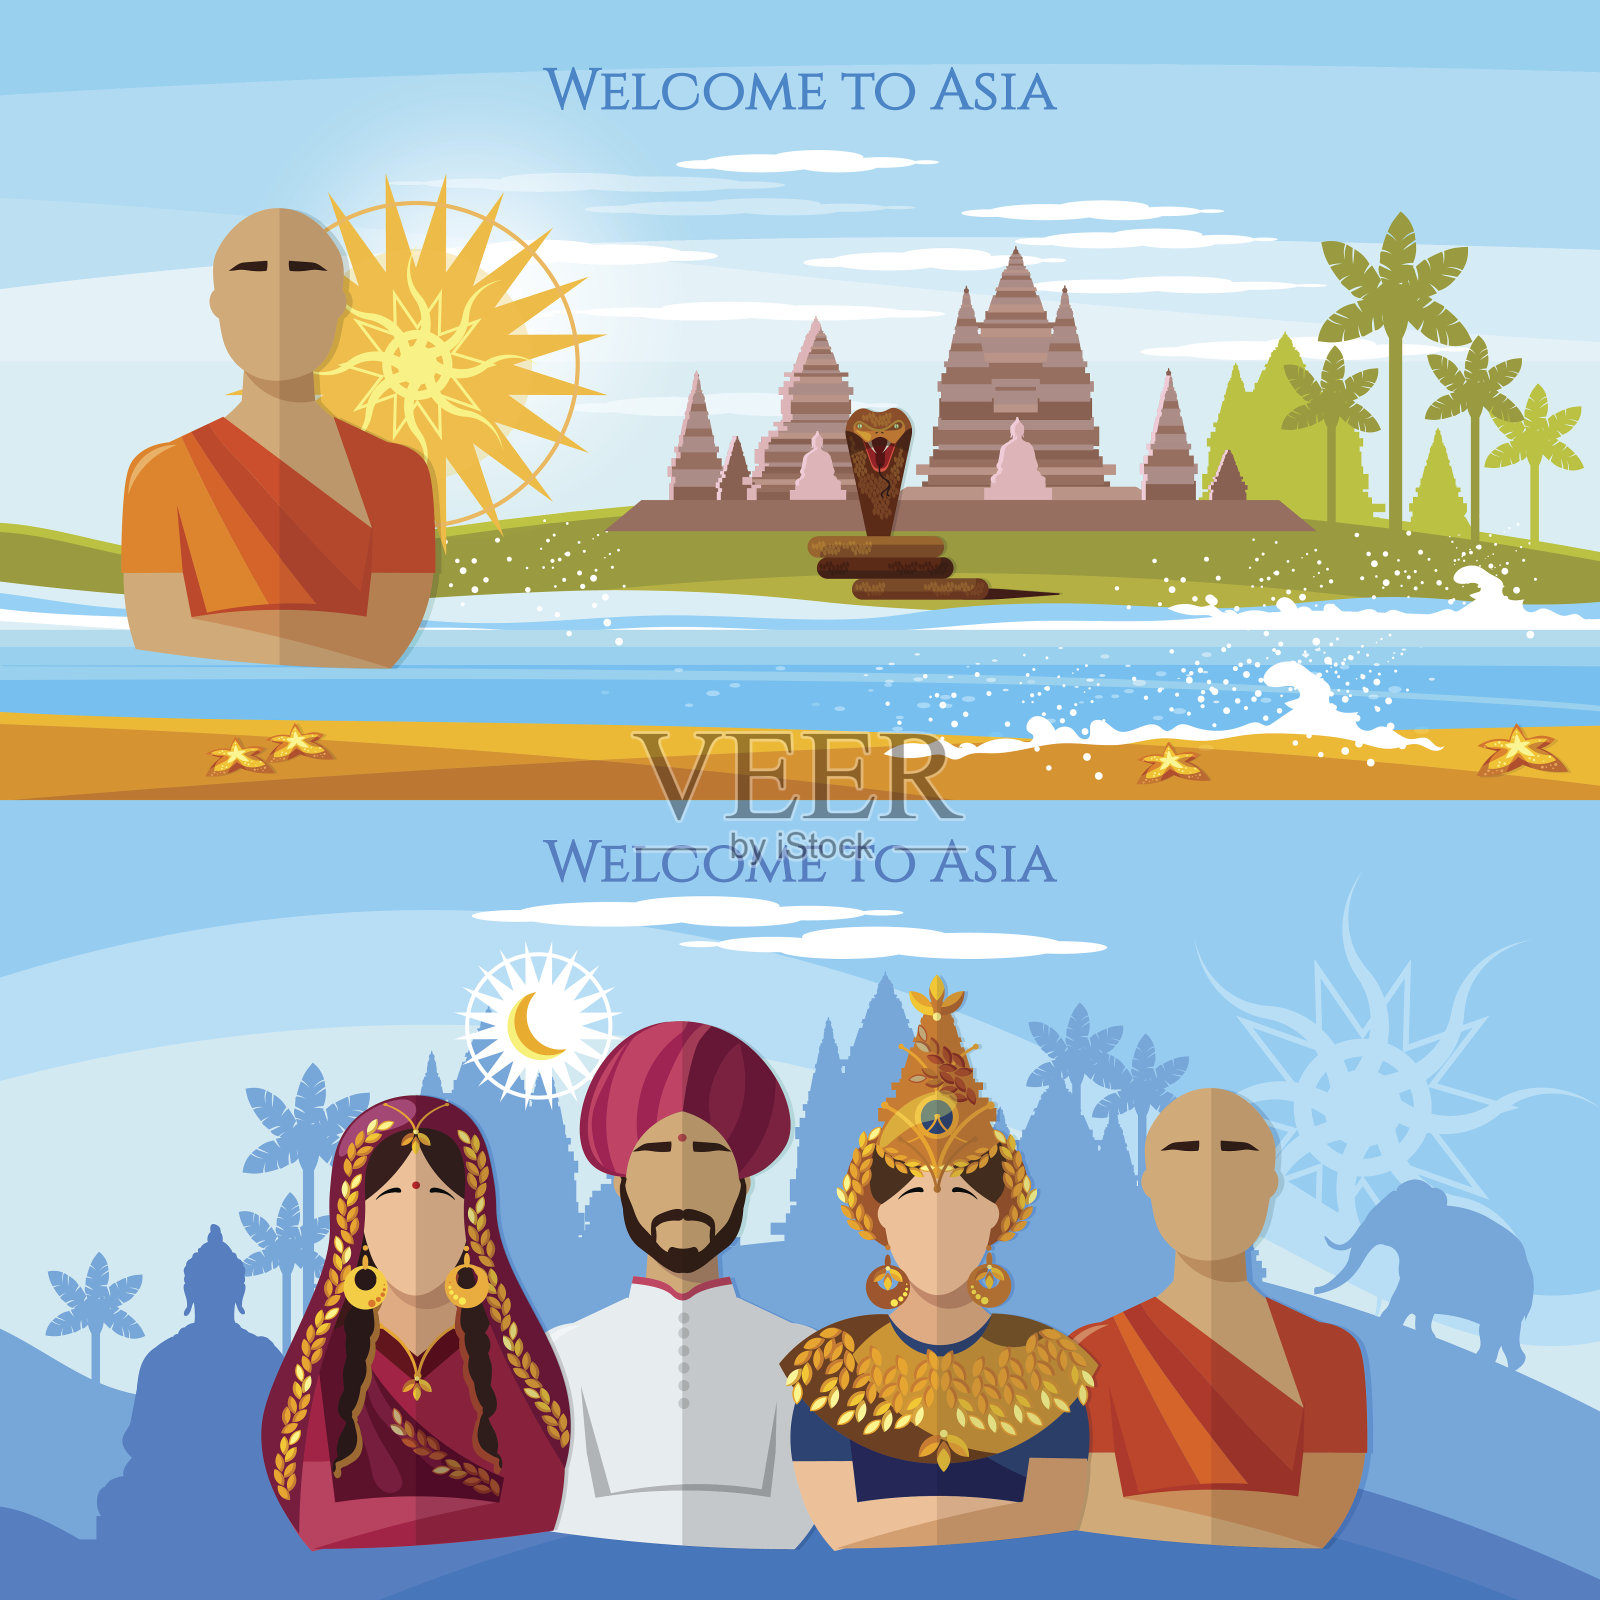 亚洲旗帜。亚洲的宗教和人民。印度教，佛教僧侣，穿纱丽的女人，穿民族服装的亚洲女孩插画图片素材